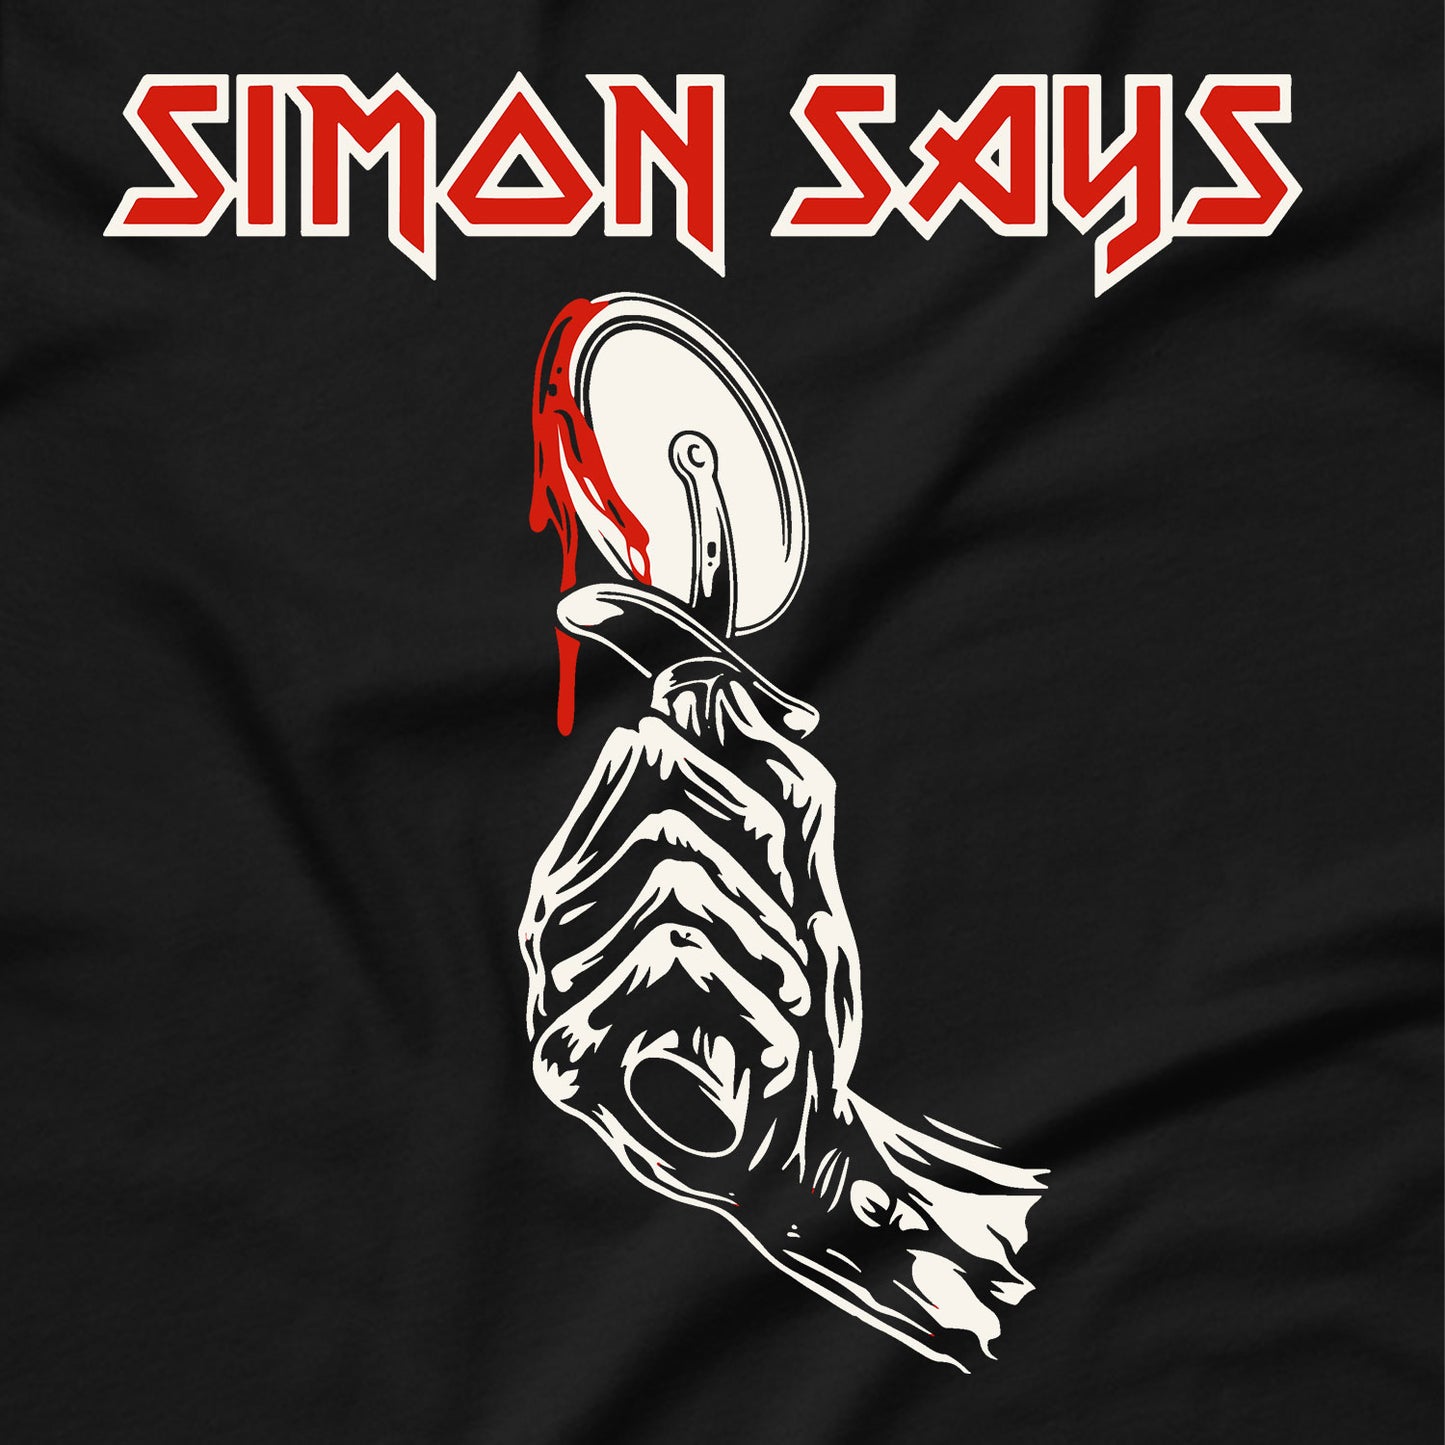 Iron Maiden - Simon Says T-Shirt